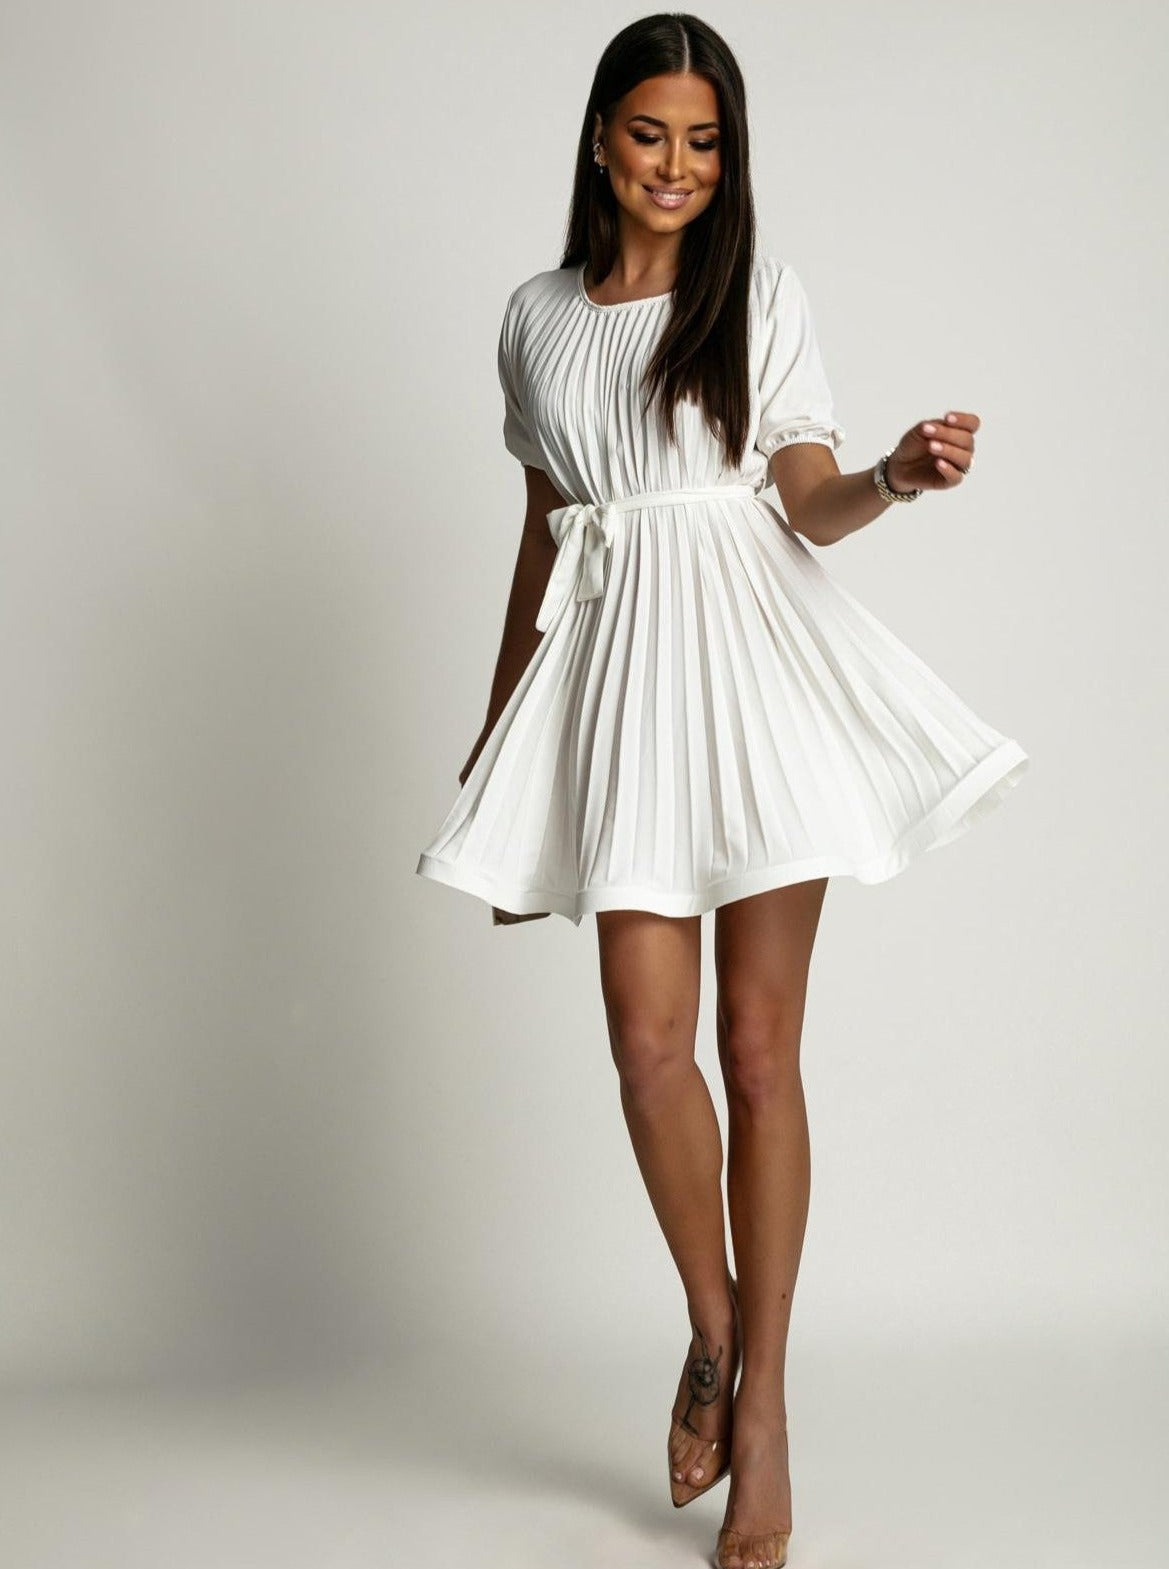 Baltos spalvos suknele